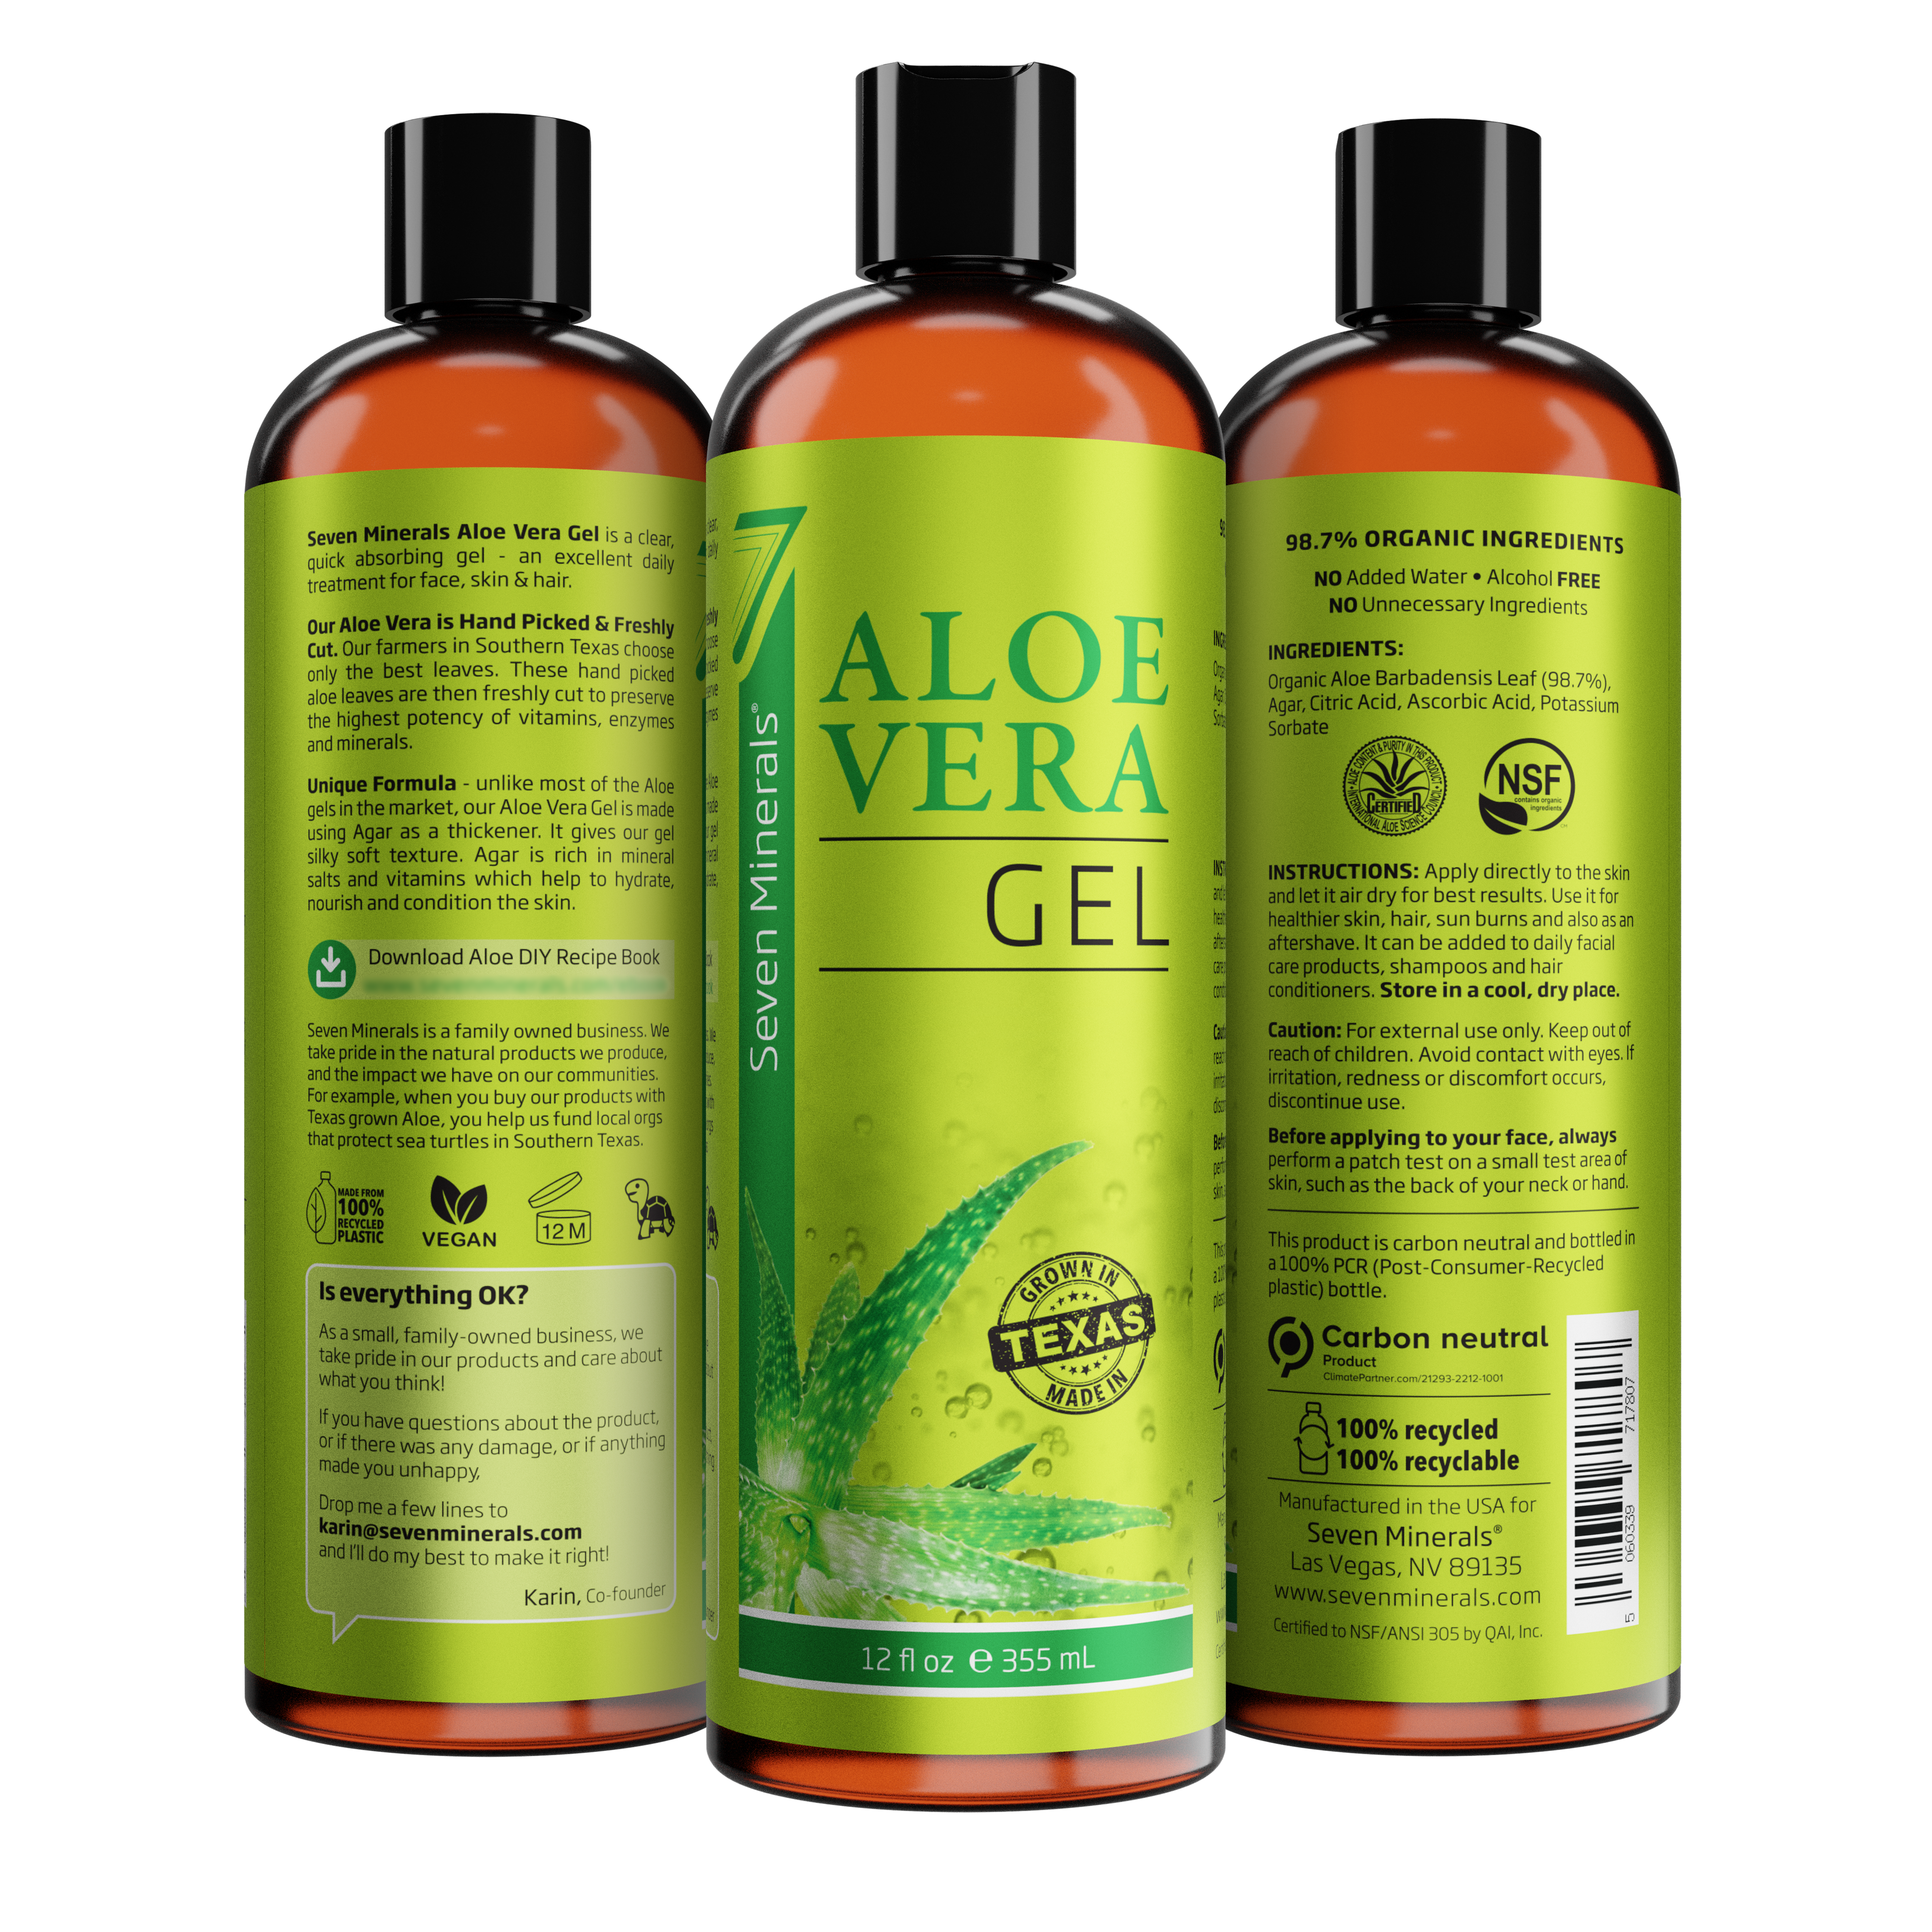 Aloe Vera Gel - 98.7% Organic - from Freshly Cut Texas Grown Aloe - Big 12 fl oz